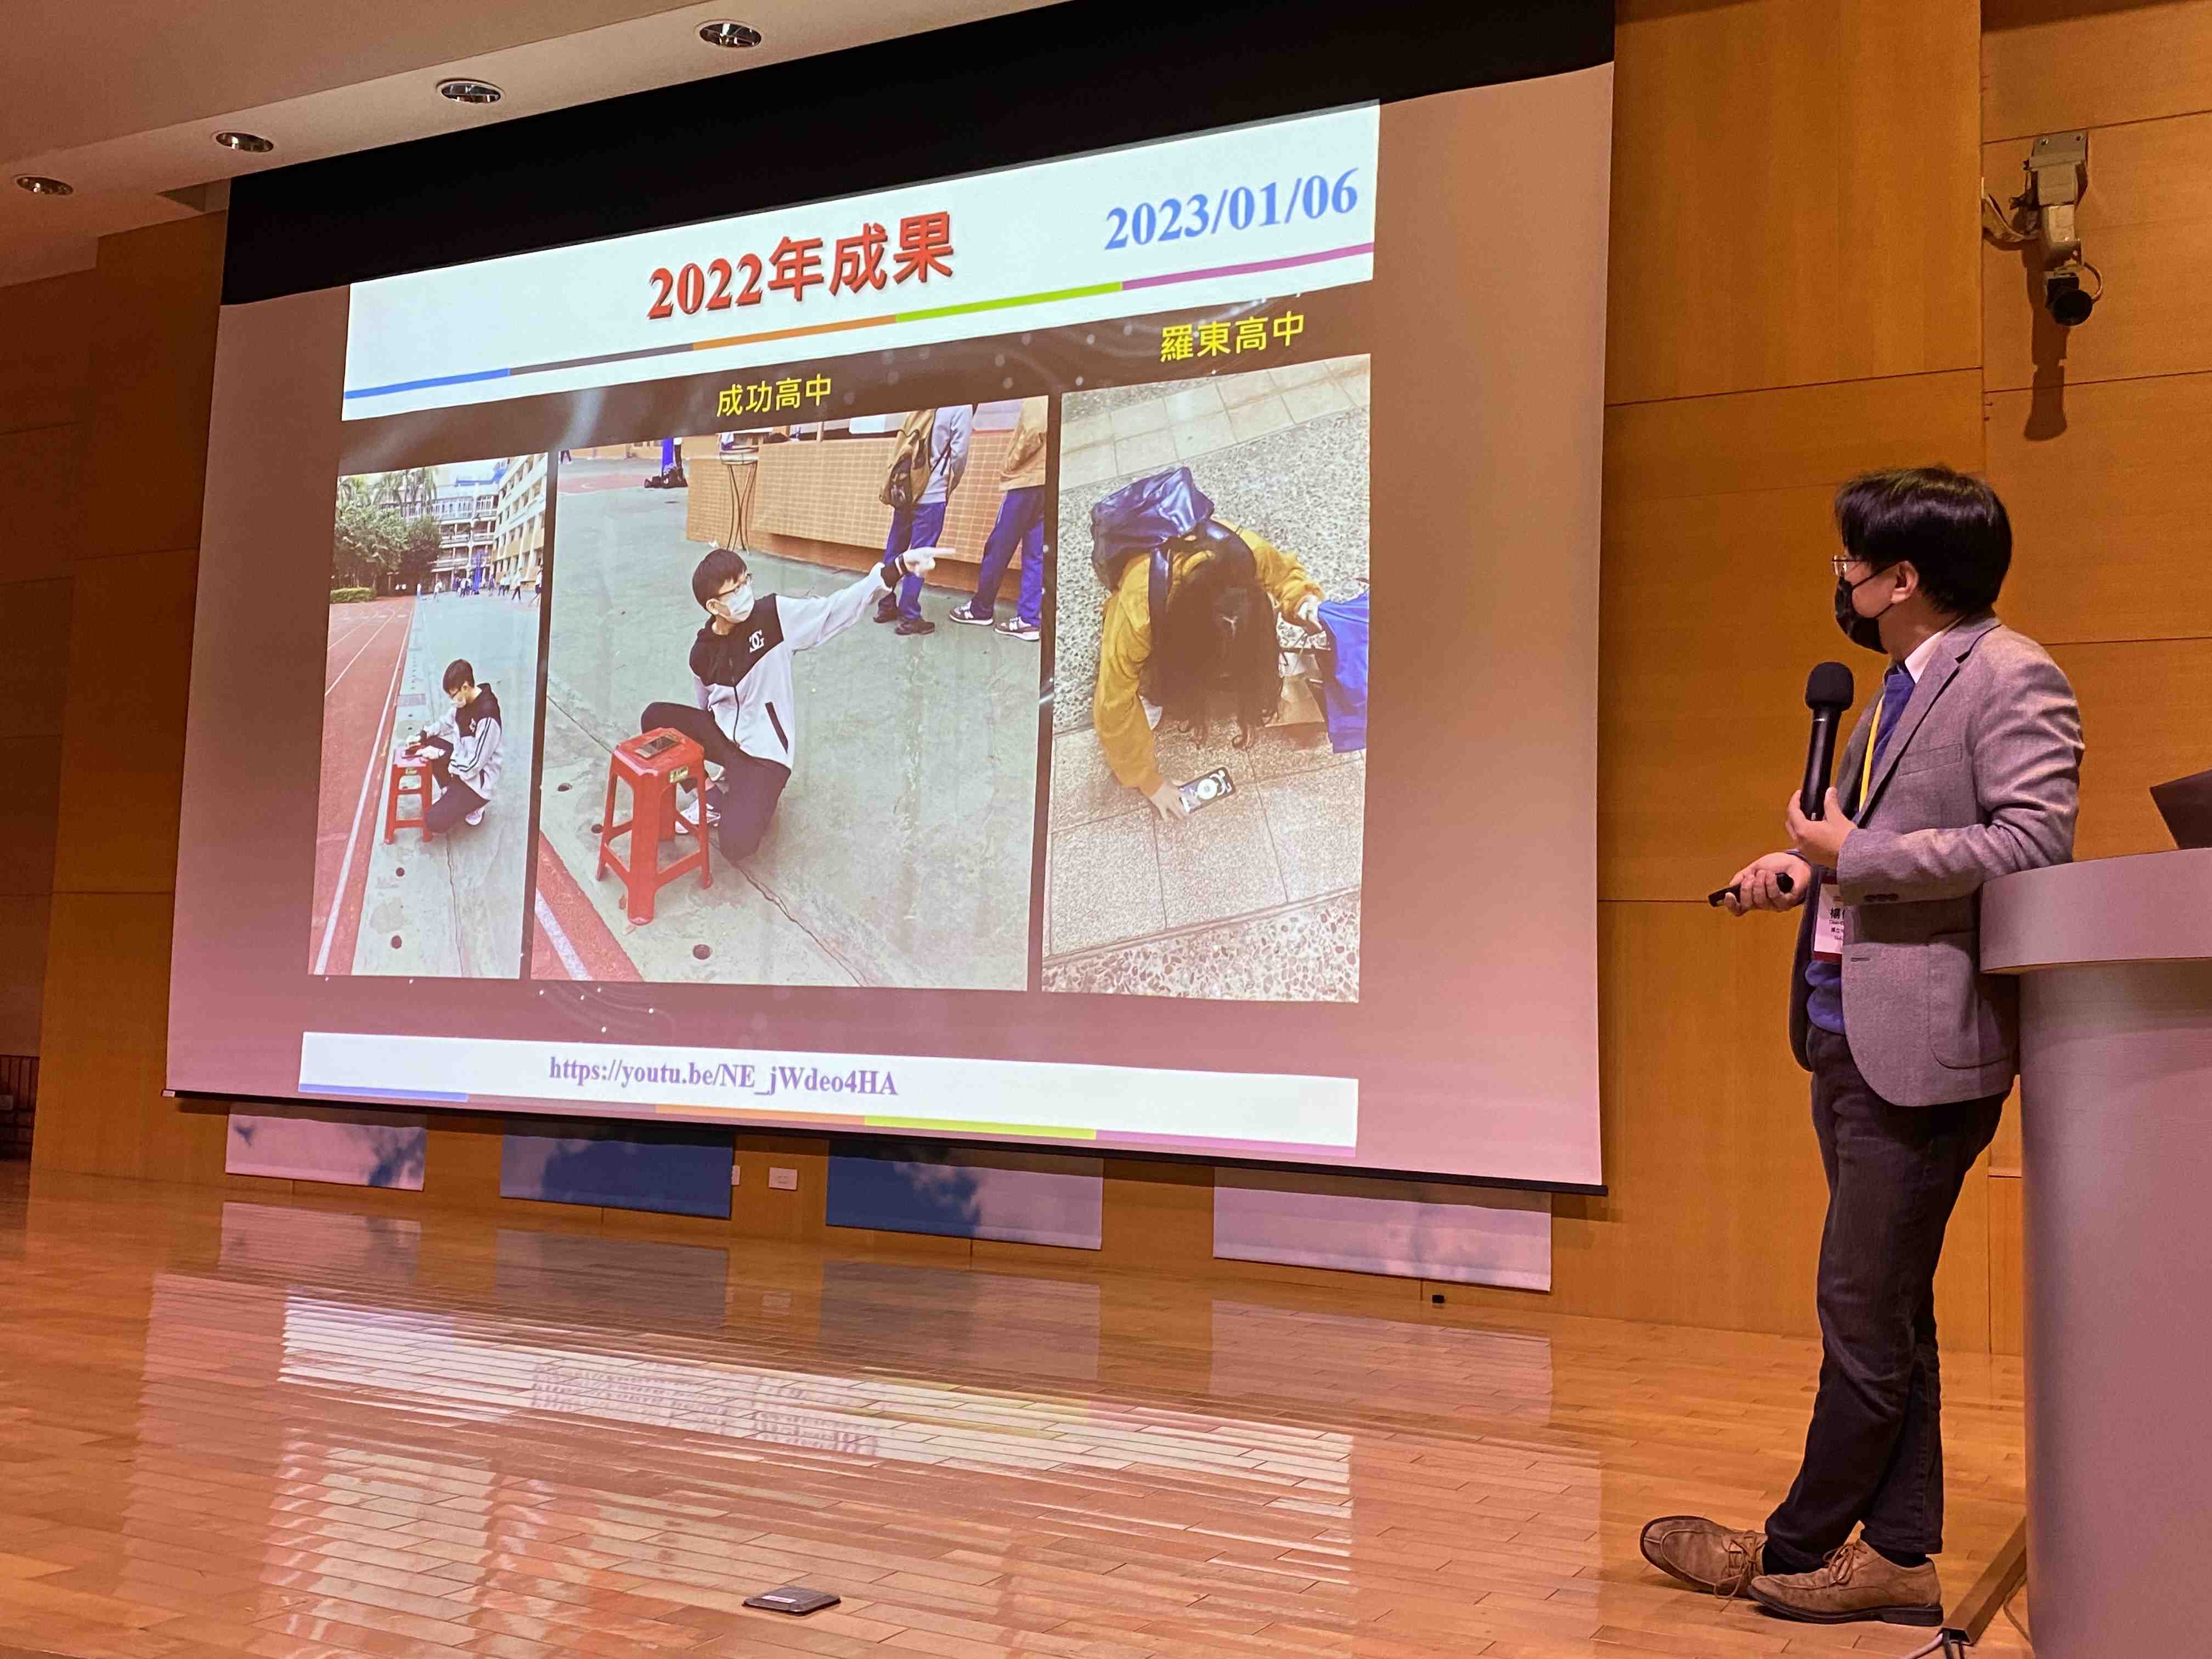 2023年台灣物理學會年會關於IYBSSD地磁量測活動之口頭報告